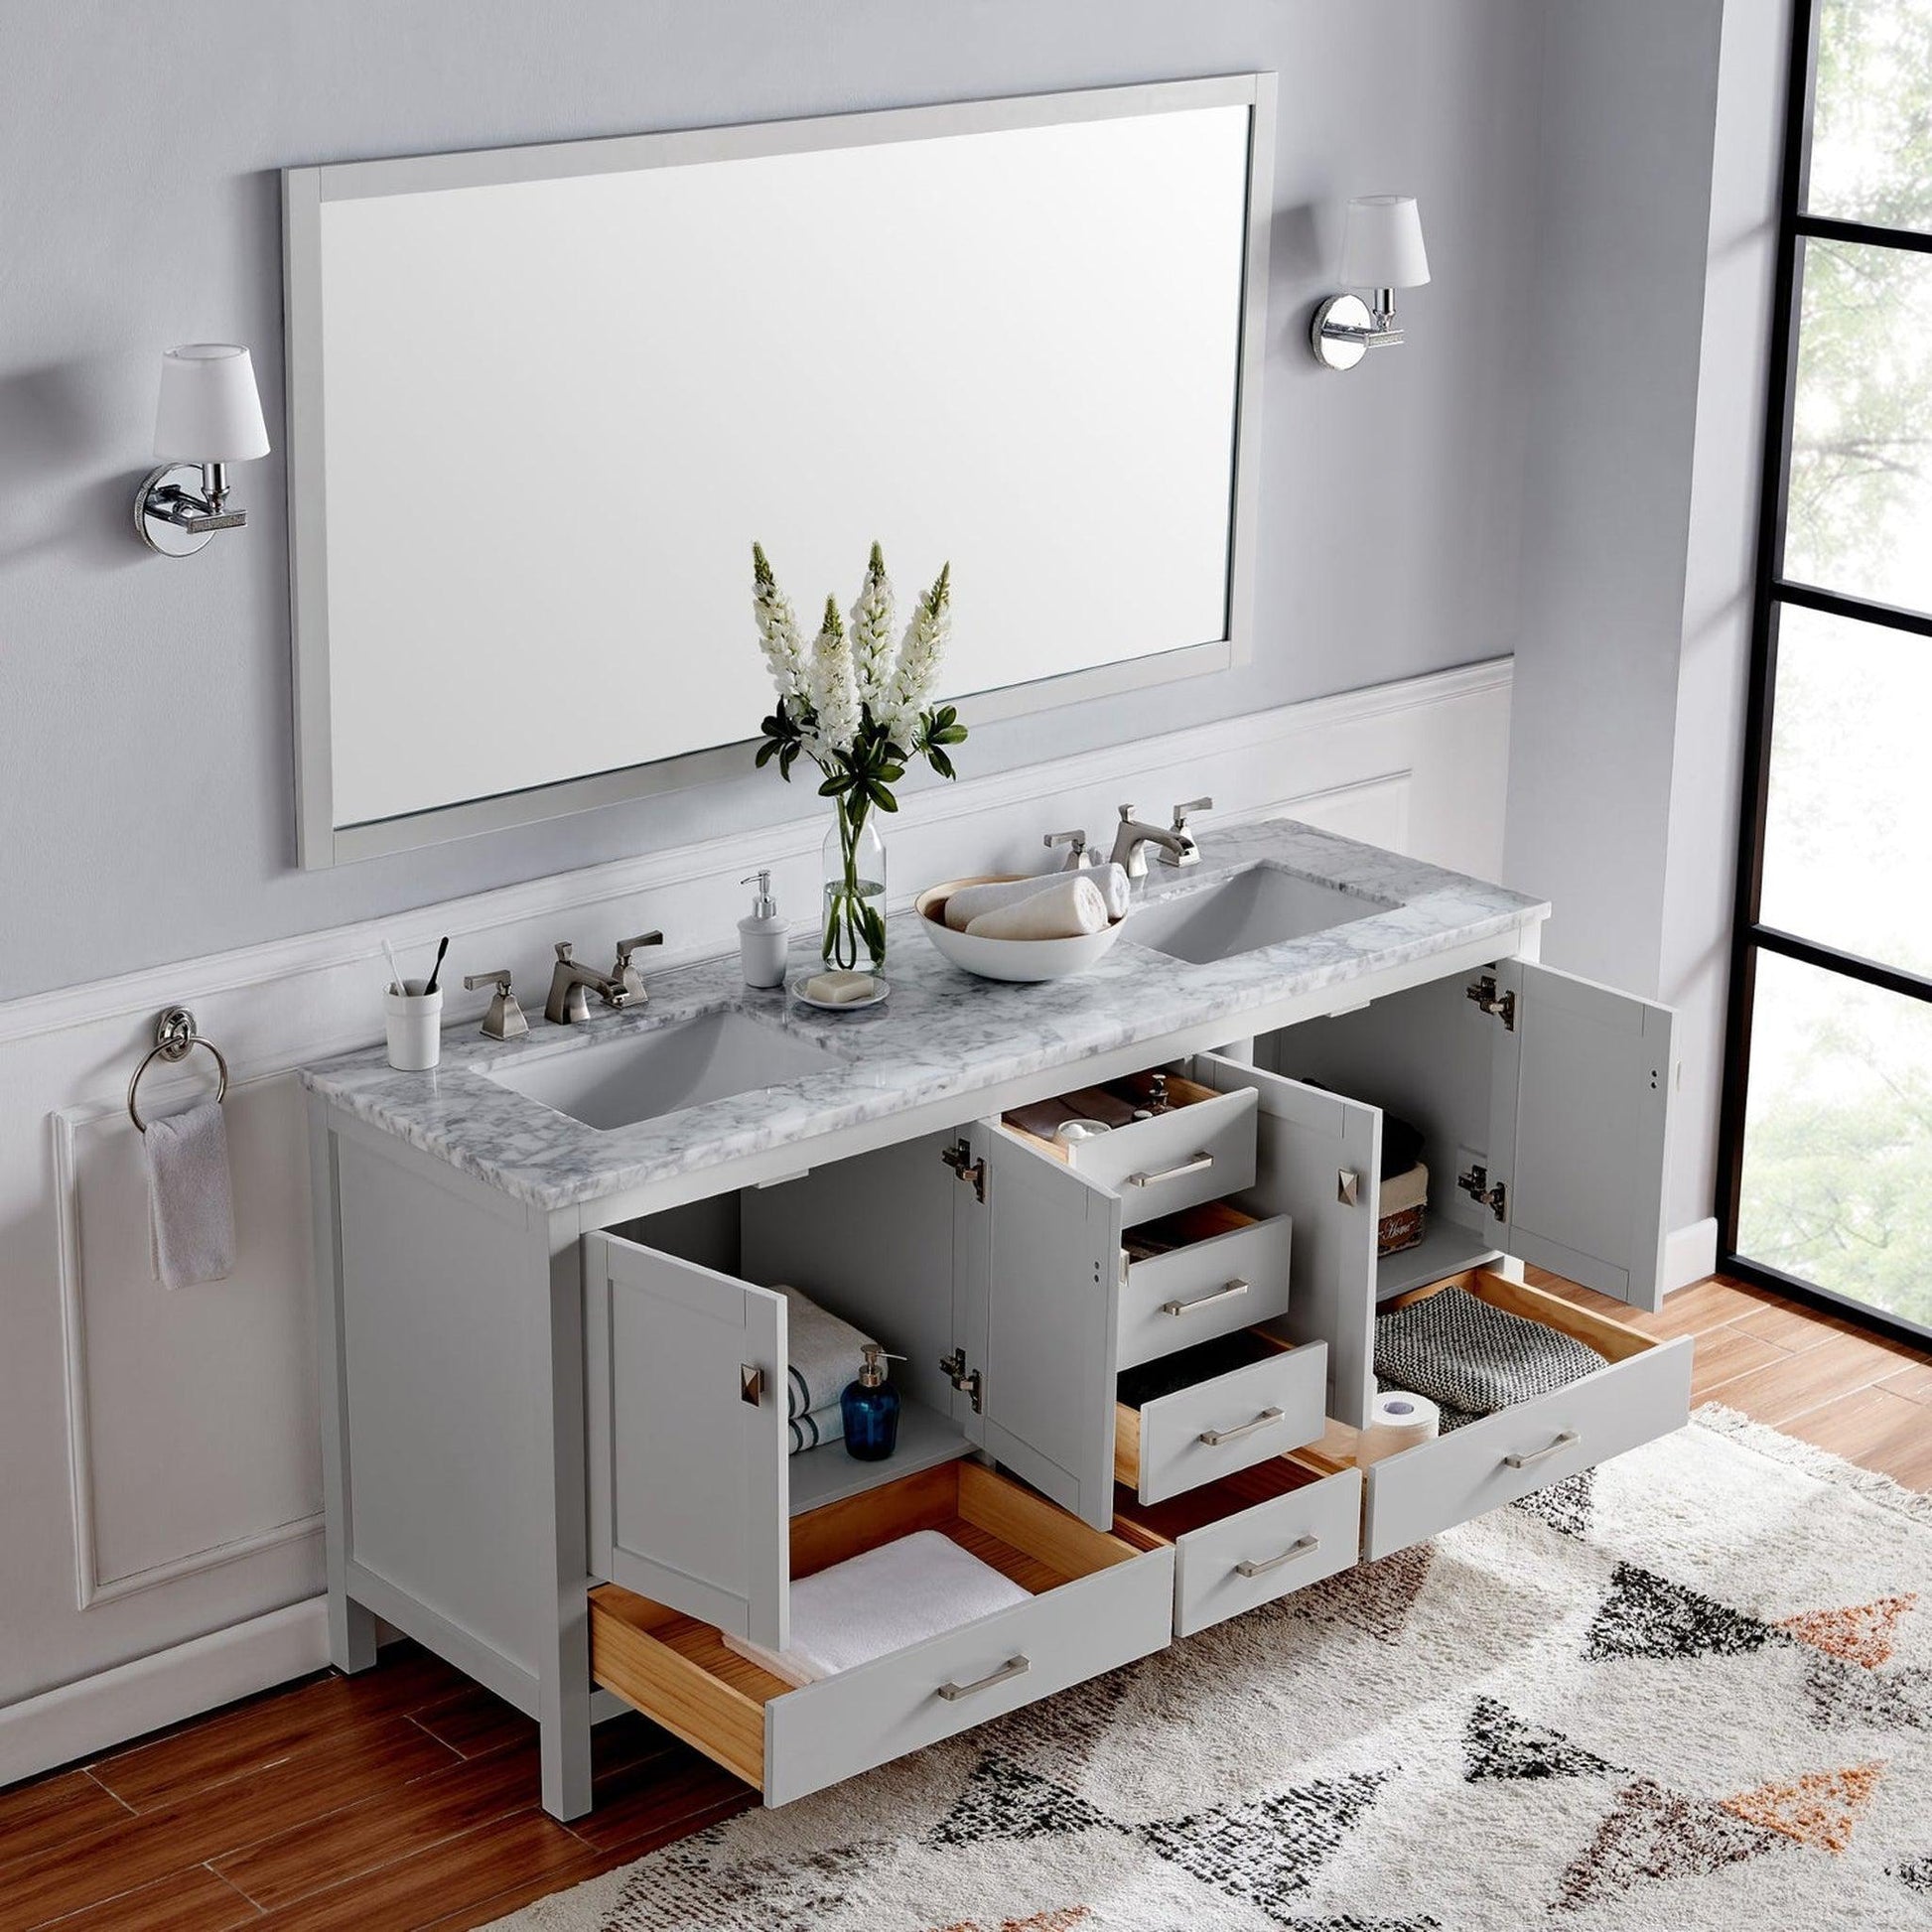 Eviva Aberdeen 72" x 34" Gray Freestanding Bathroom Vanity With Double Undermount Sink